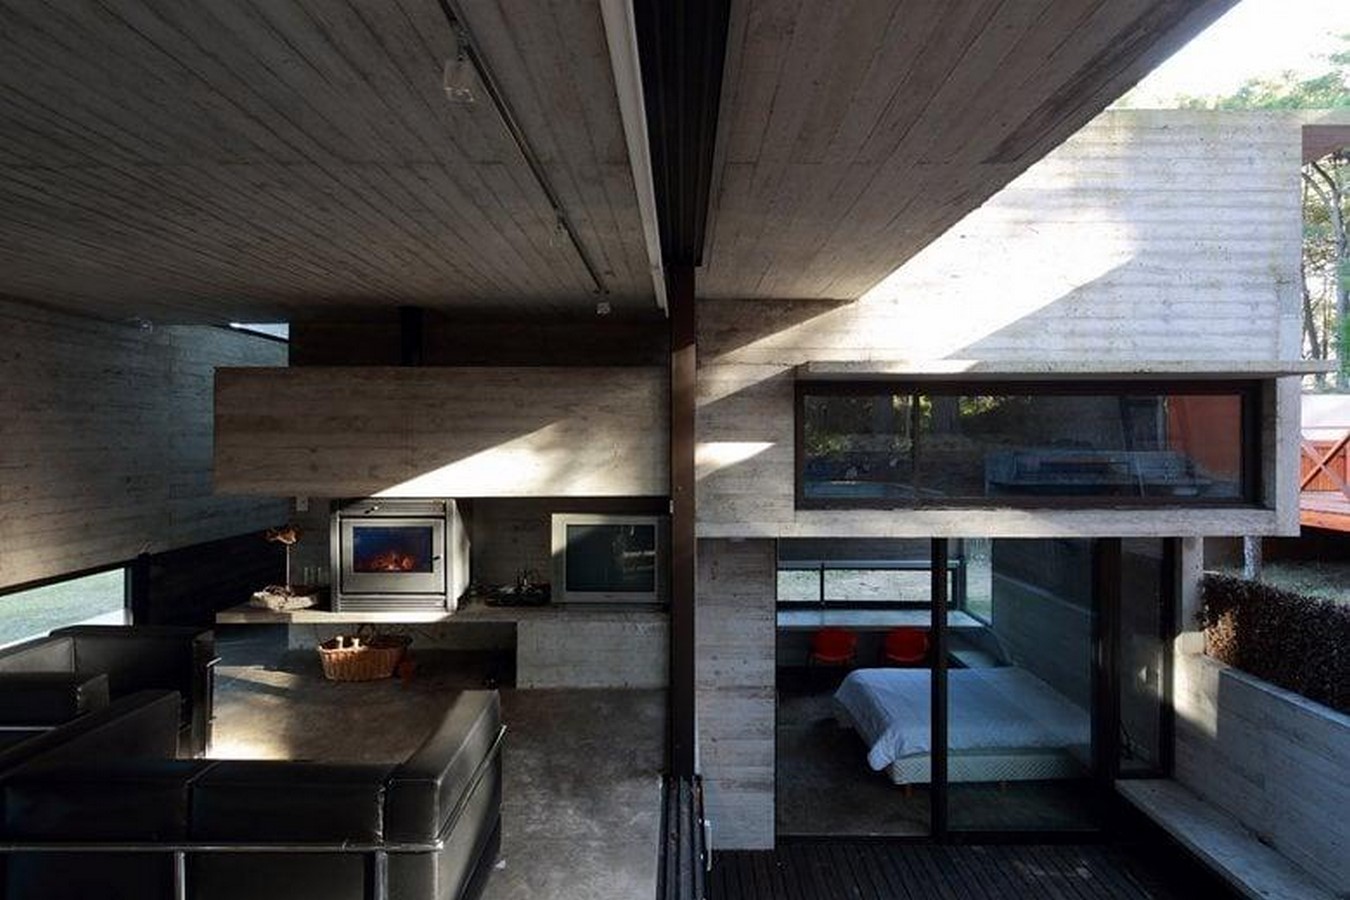 Pedroso House by BAK arquitectos - Sheet3